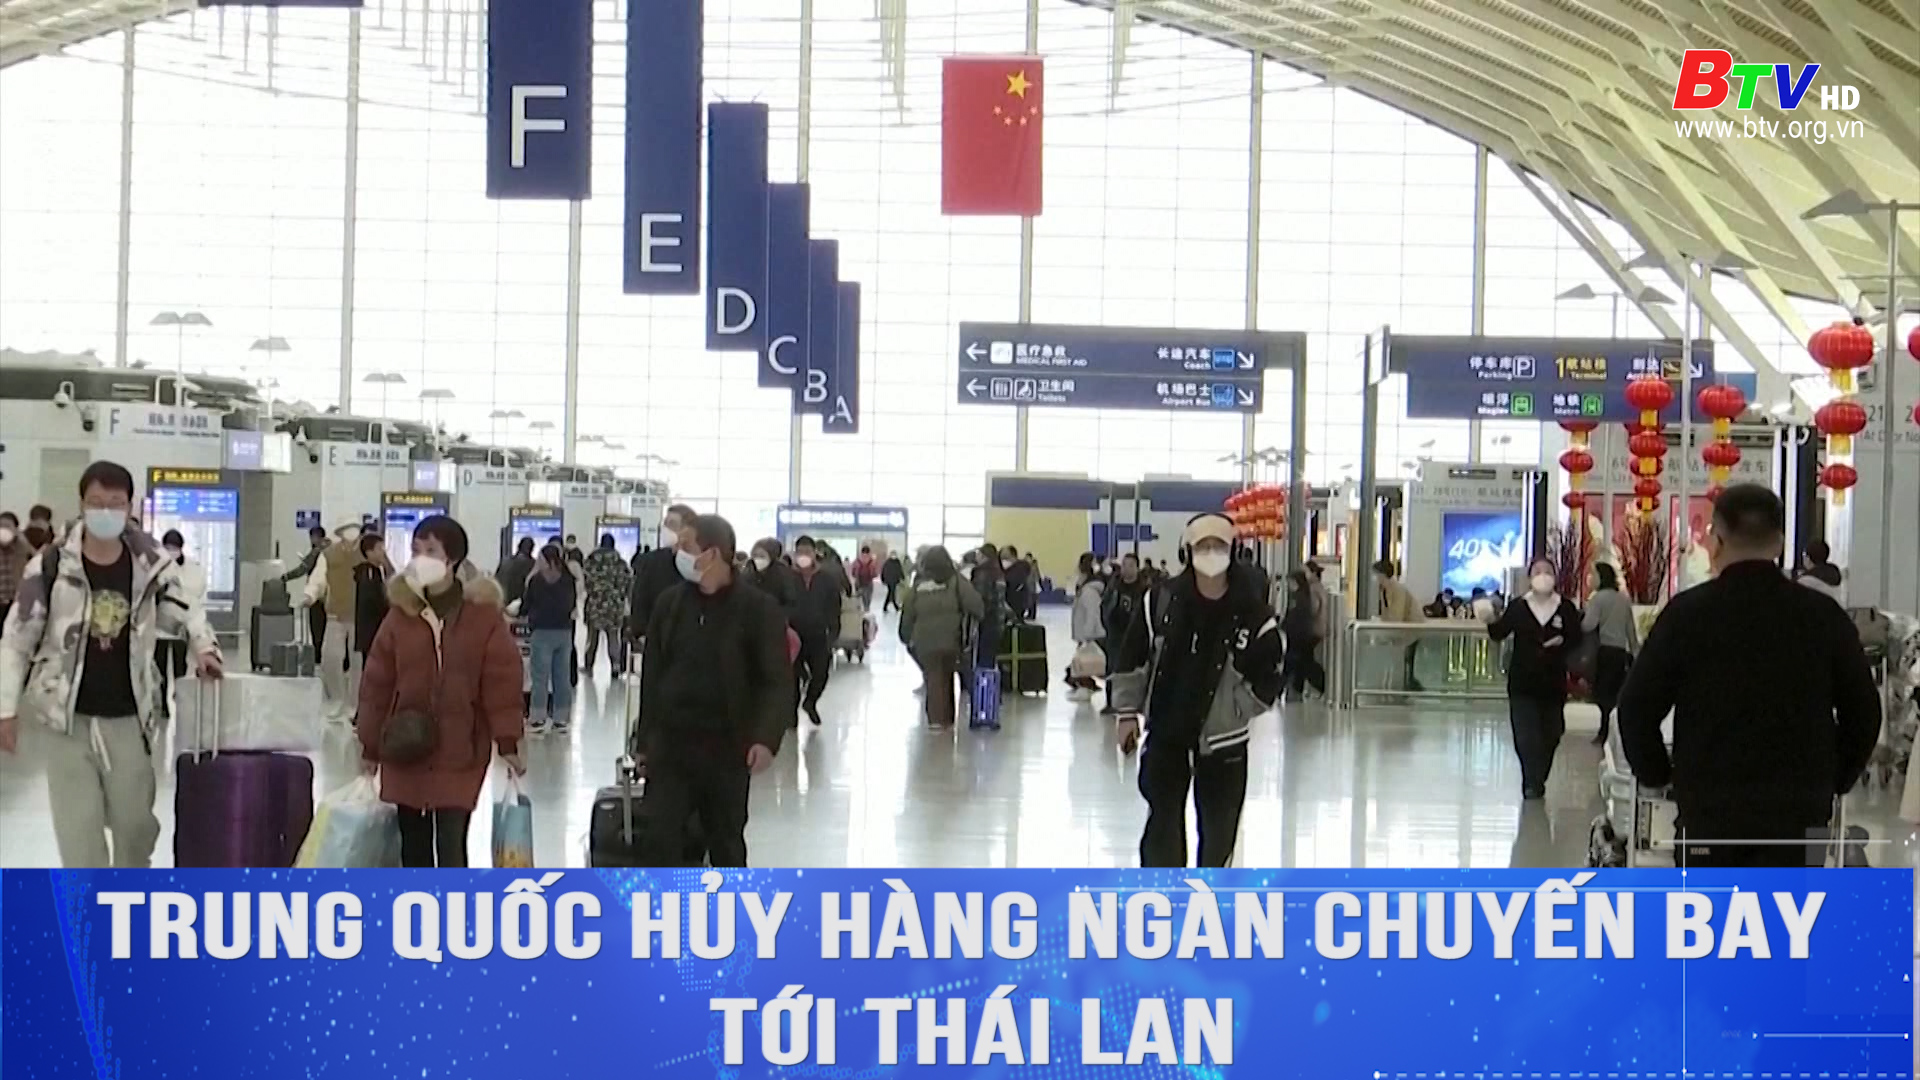 Trung Quốc hủy hàng ngàn chuyến bay tới Thái Lan	